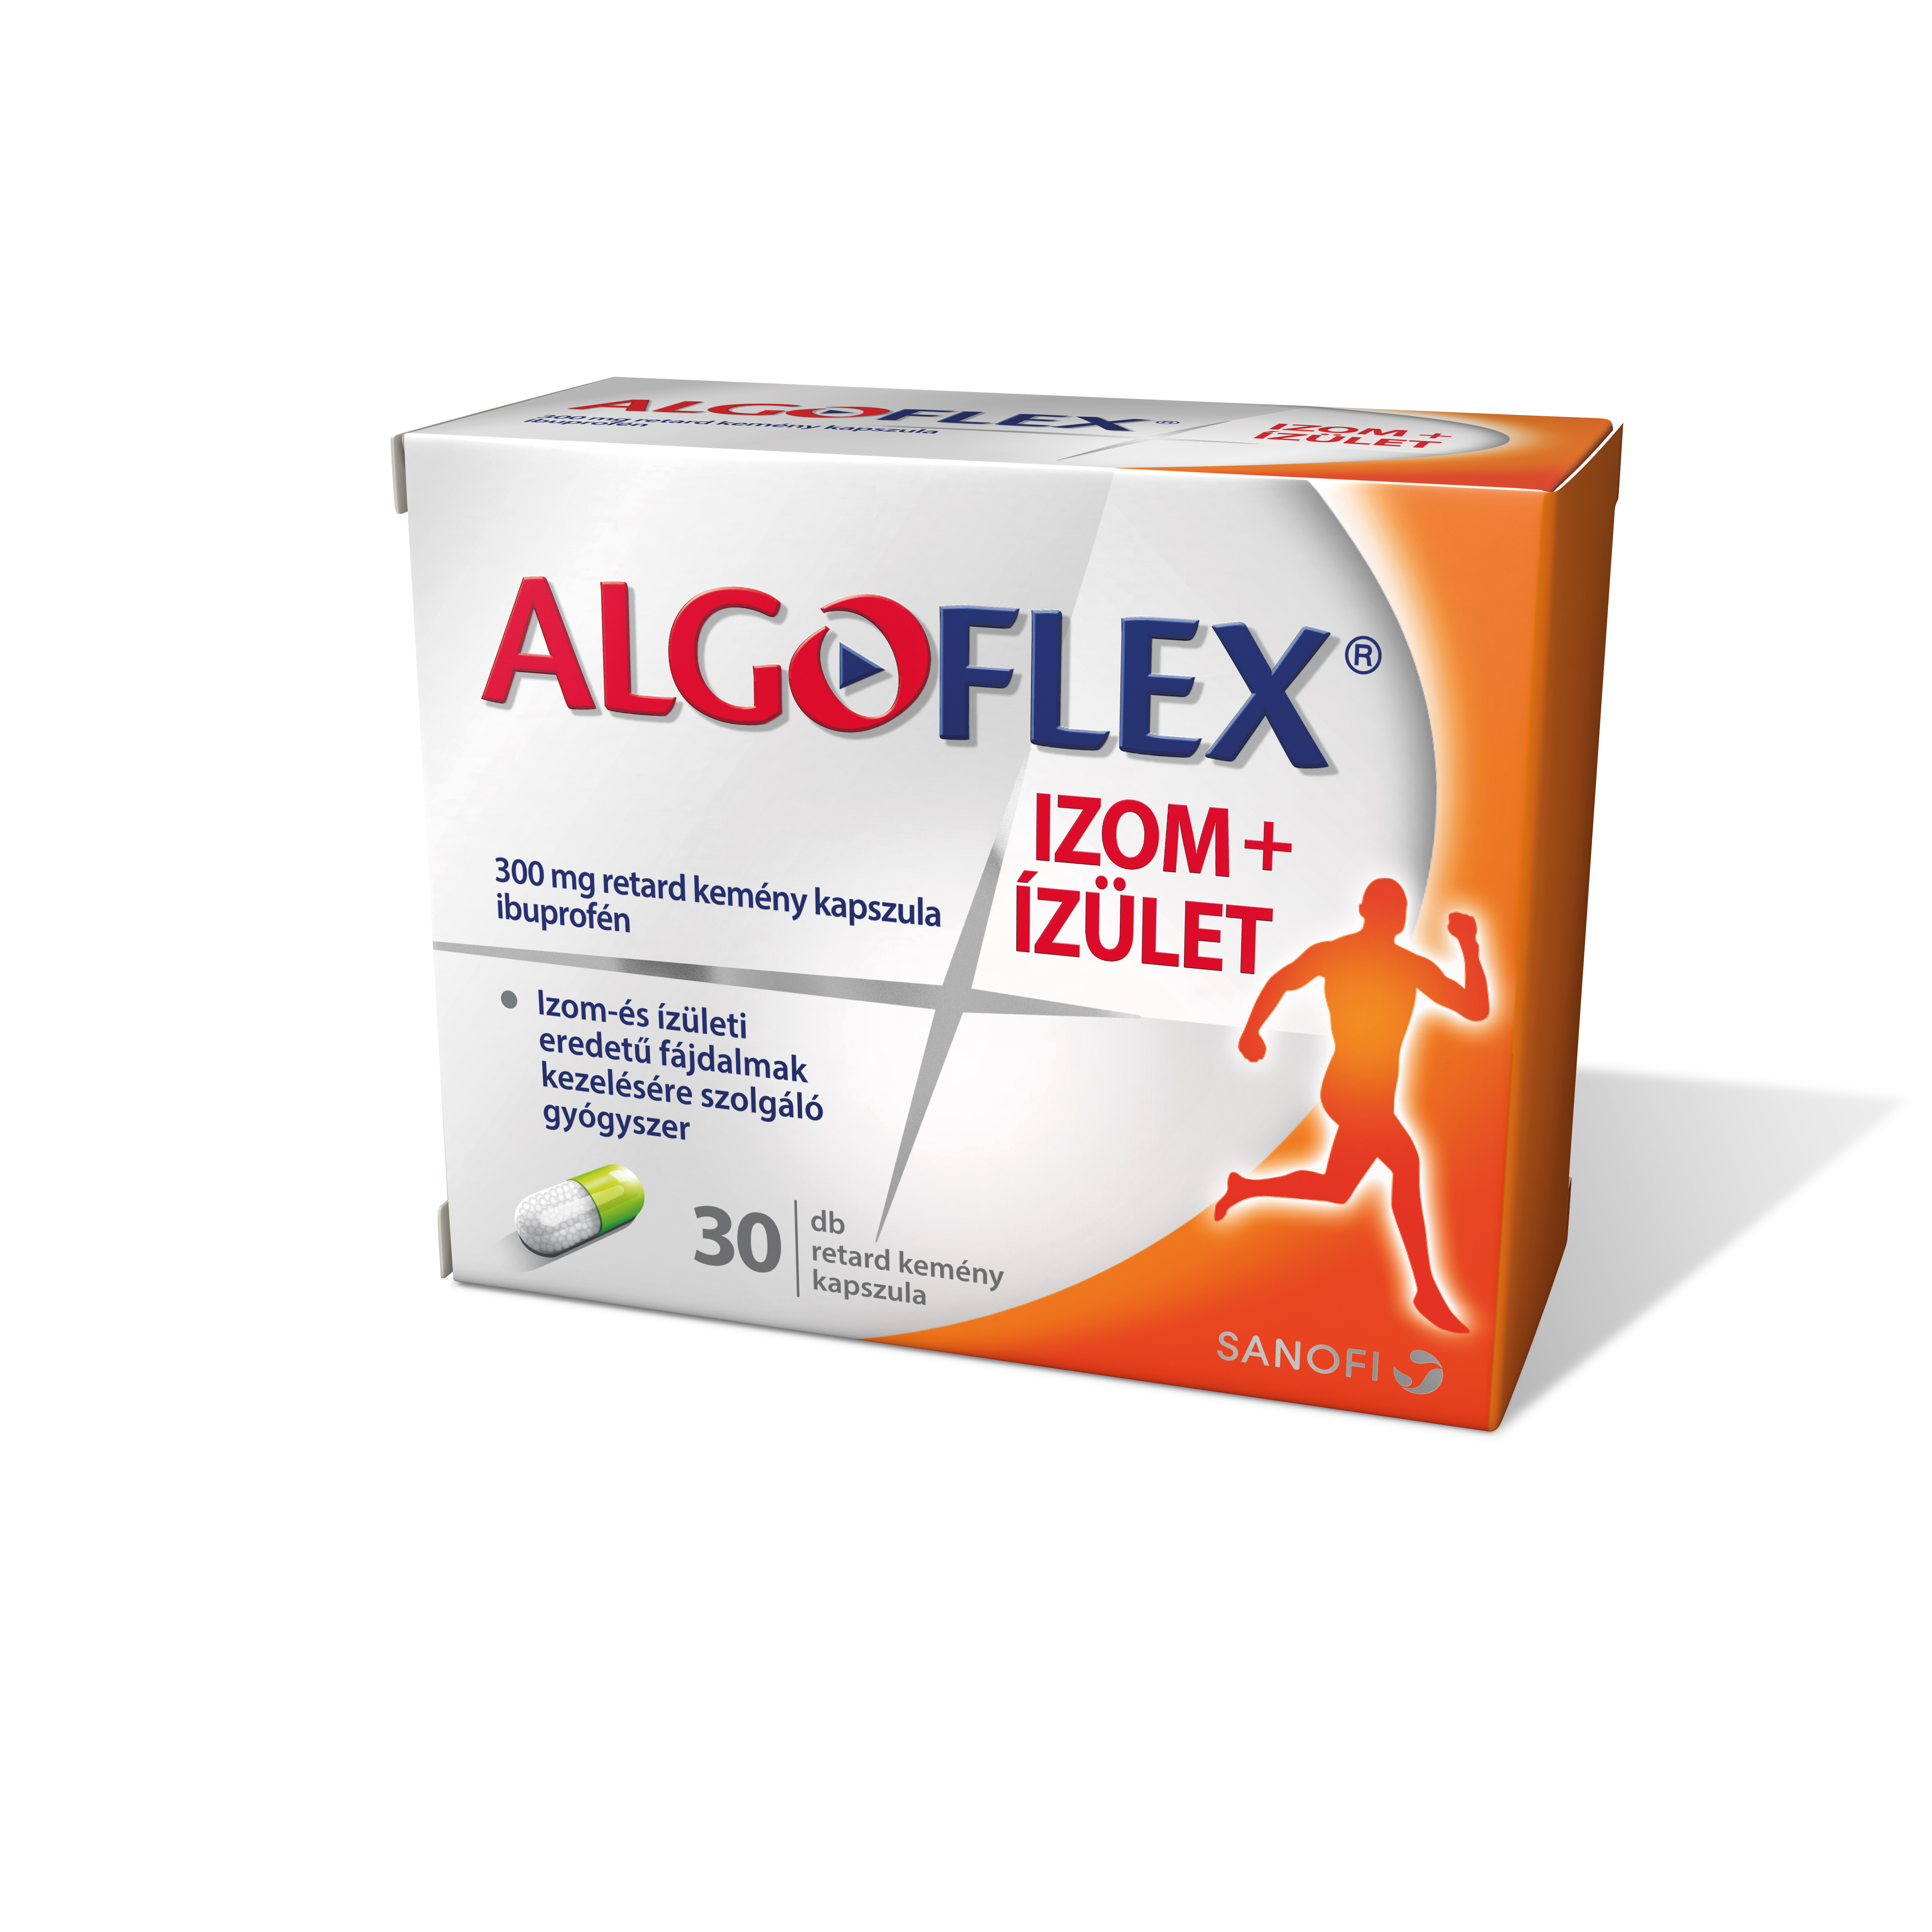 Algoflex Izom+Ízület 300mg retard kemény kapszula 30x